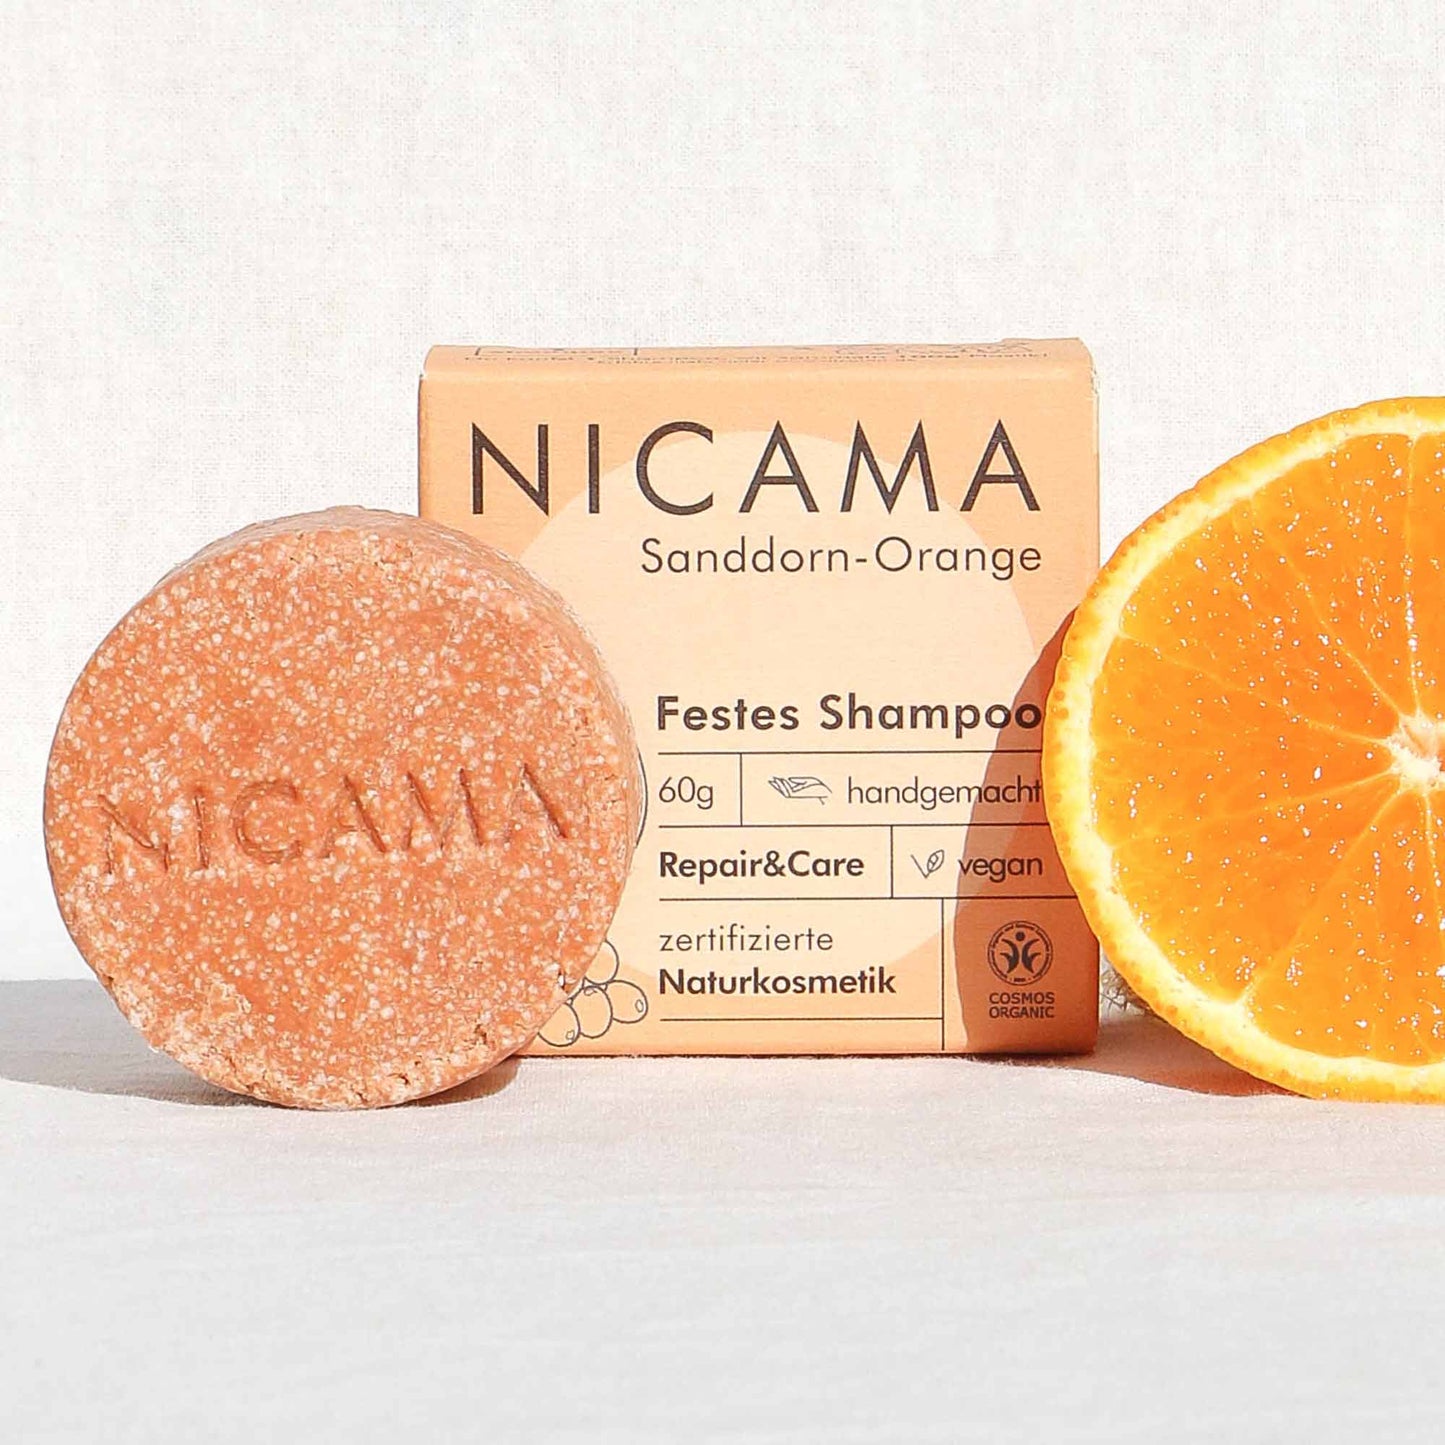 🇩🇪 Festes Shampoo von Nicama - Sanddorn-Orange